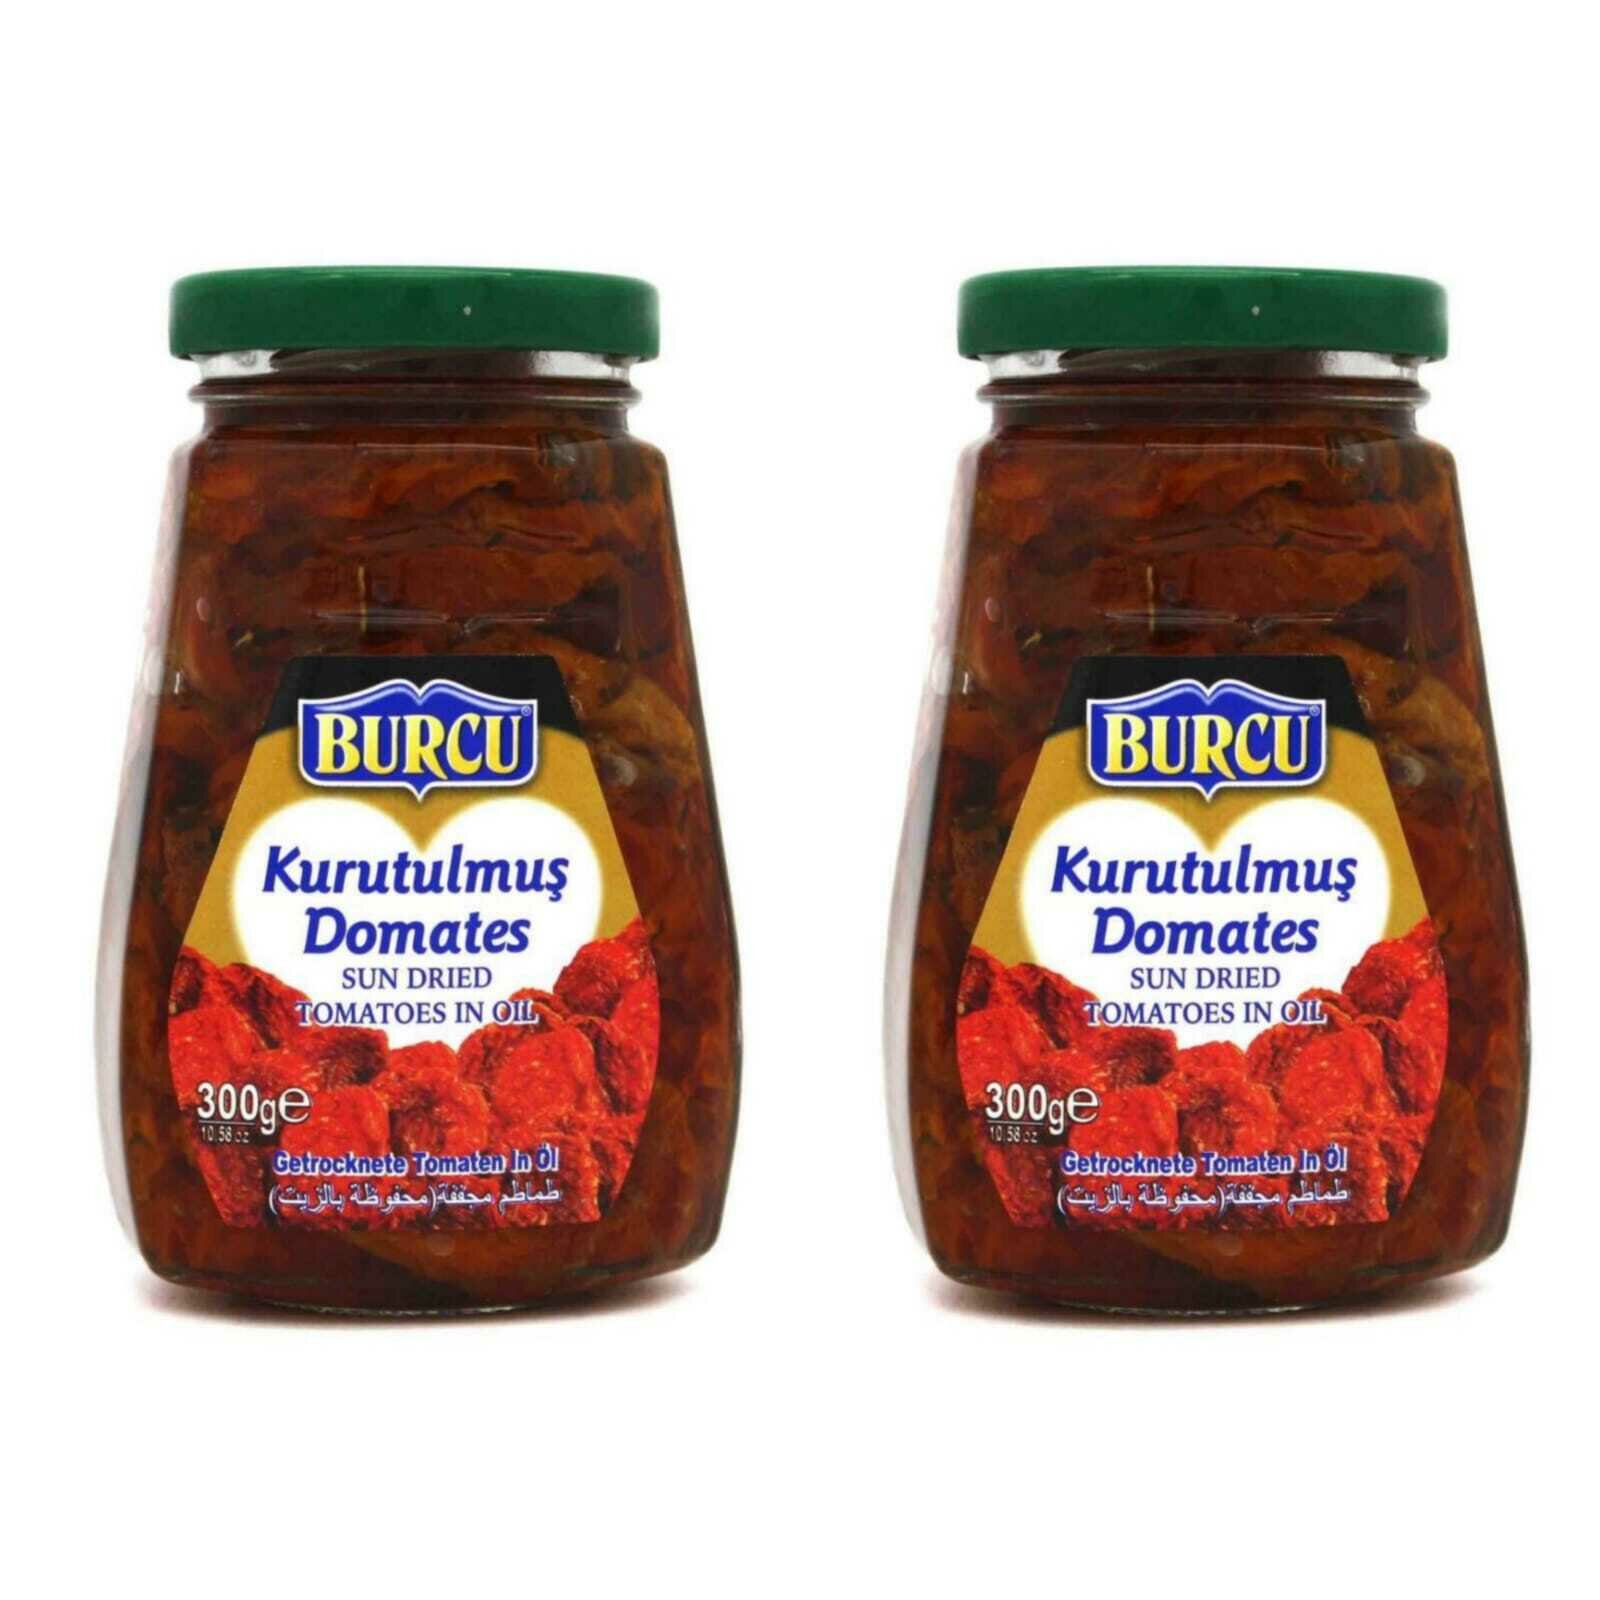 Вяленые помидоры BURCU в масле 300 г, 2 шт